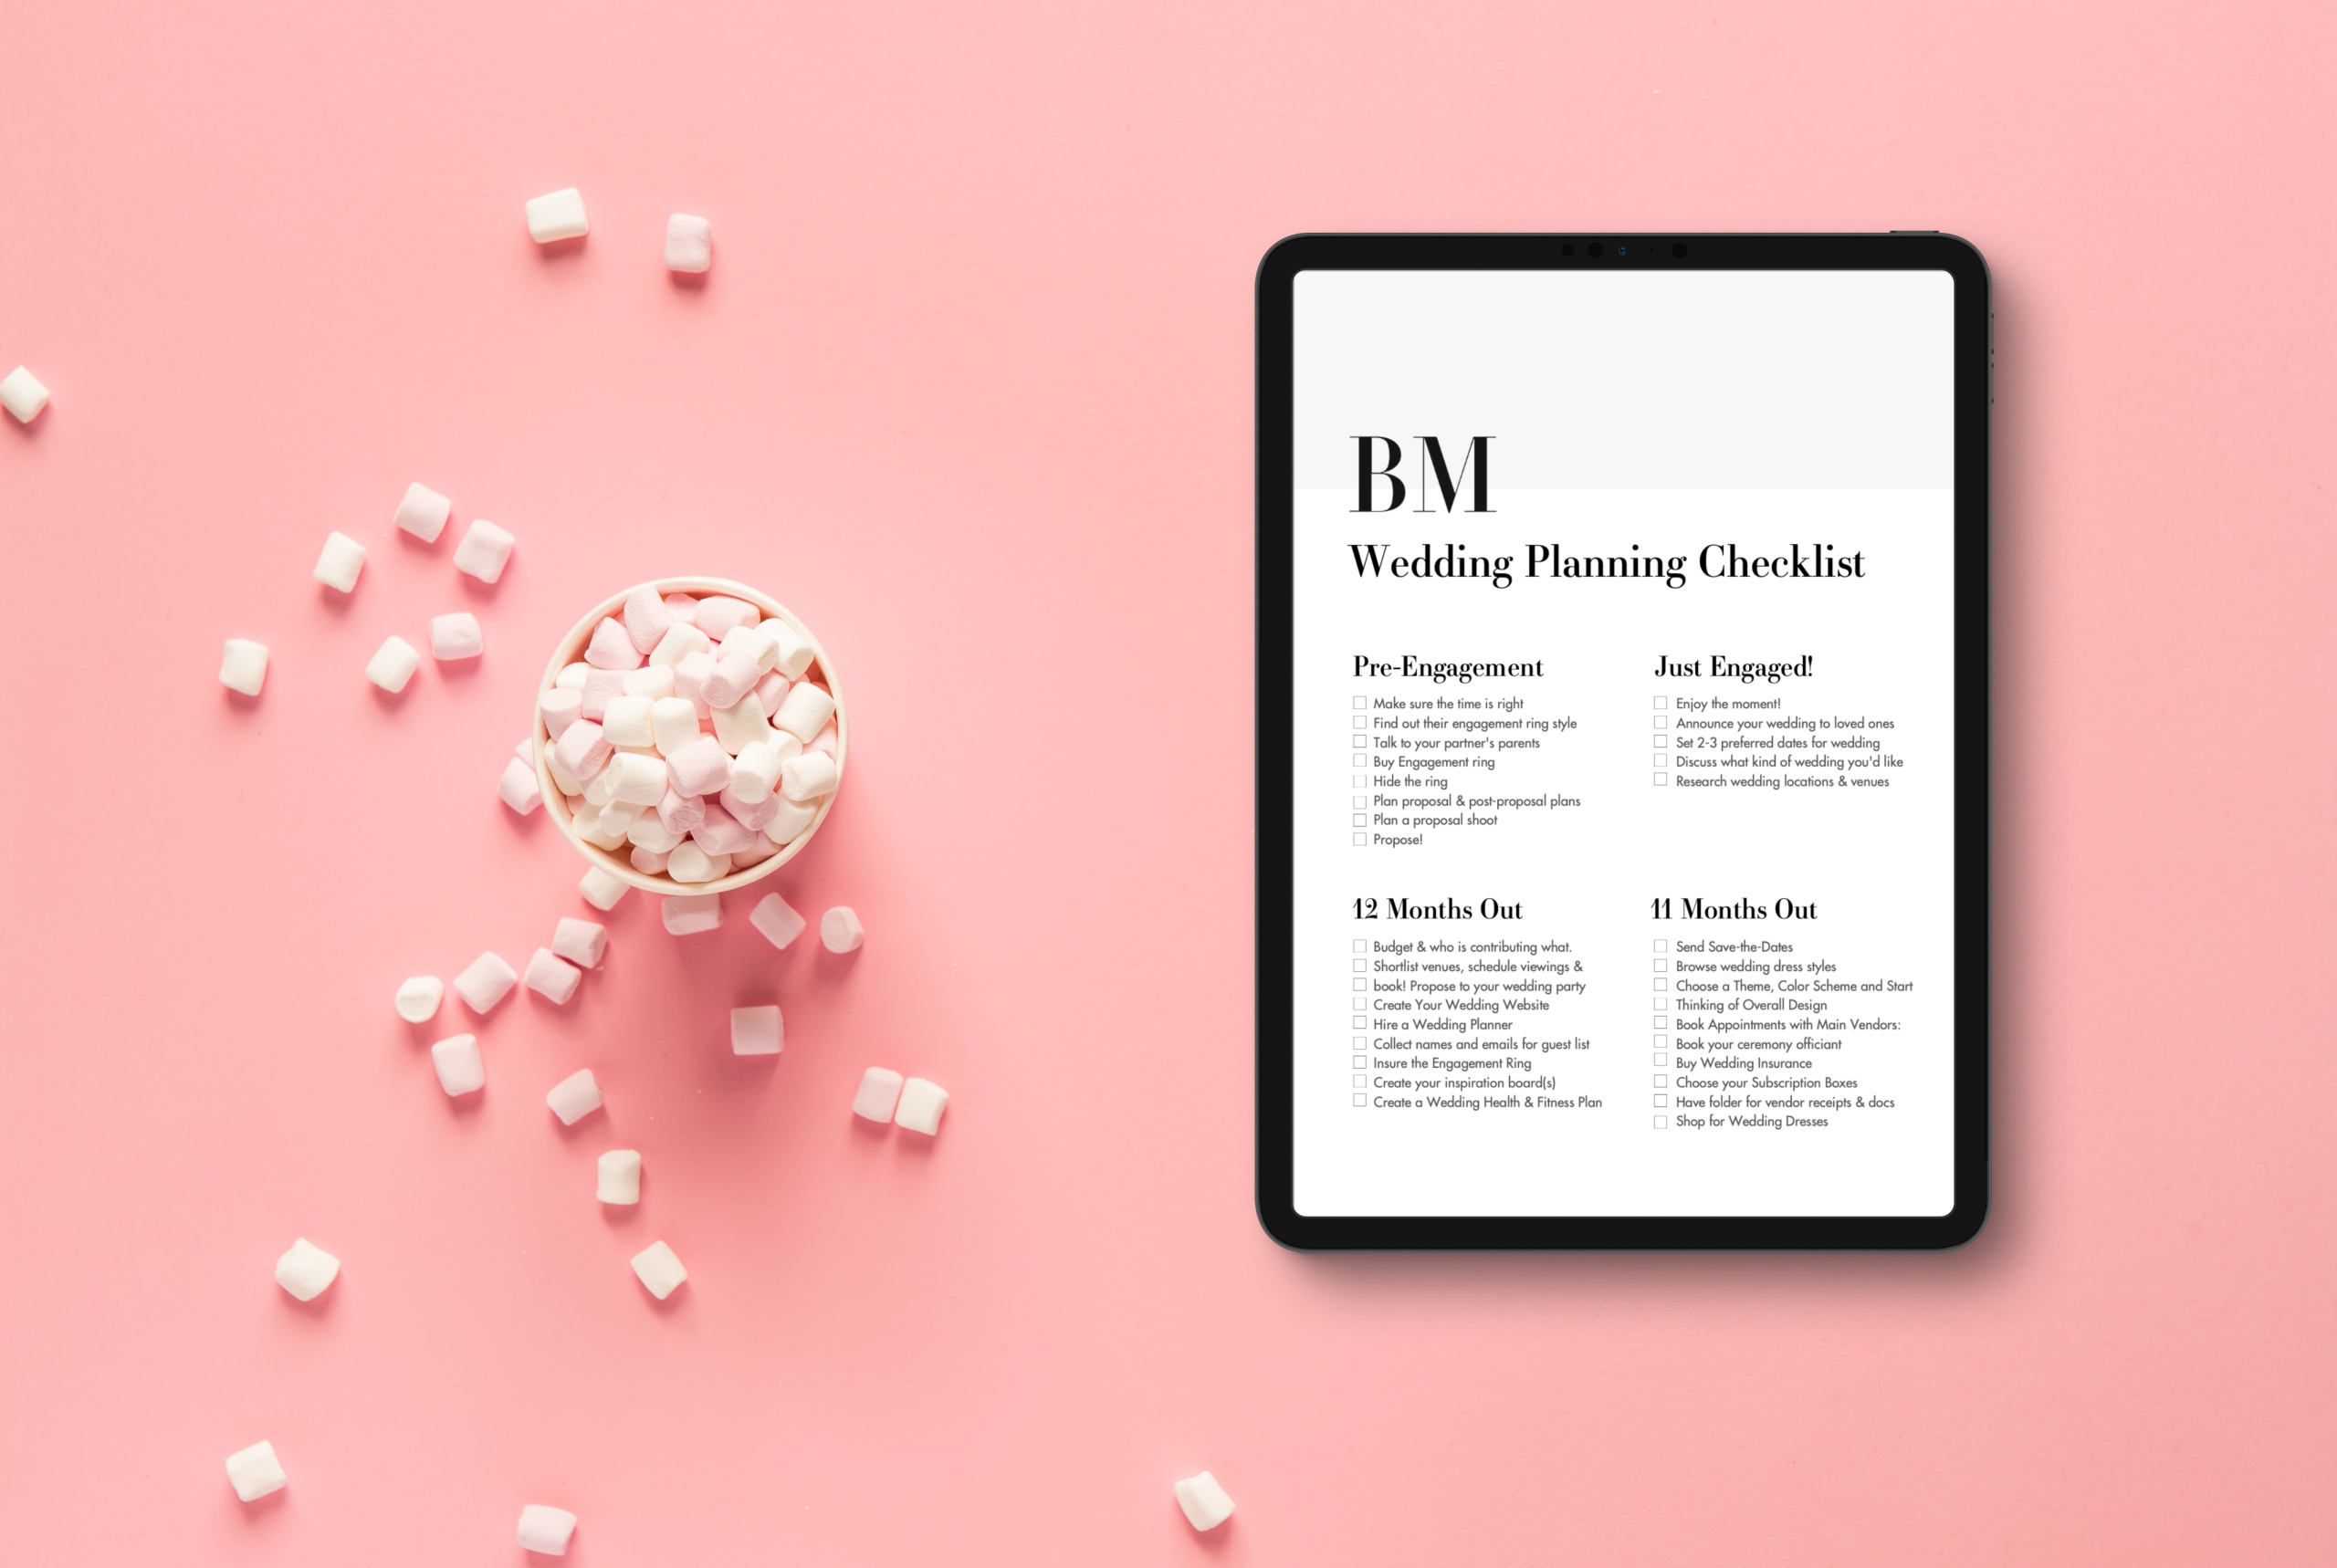 300 Wedding Planner Printable Template Wedding Planner Wedding Itinerary Wedding  Planning Book Wedding Planning Checklist 